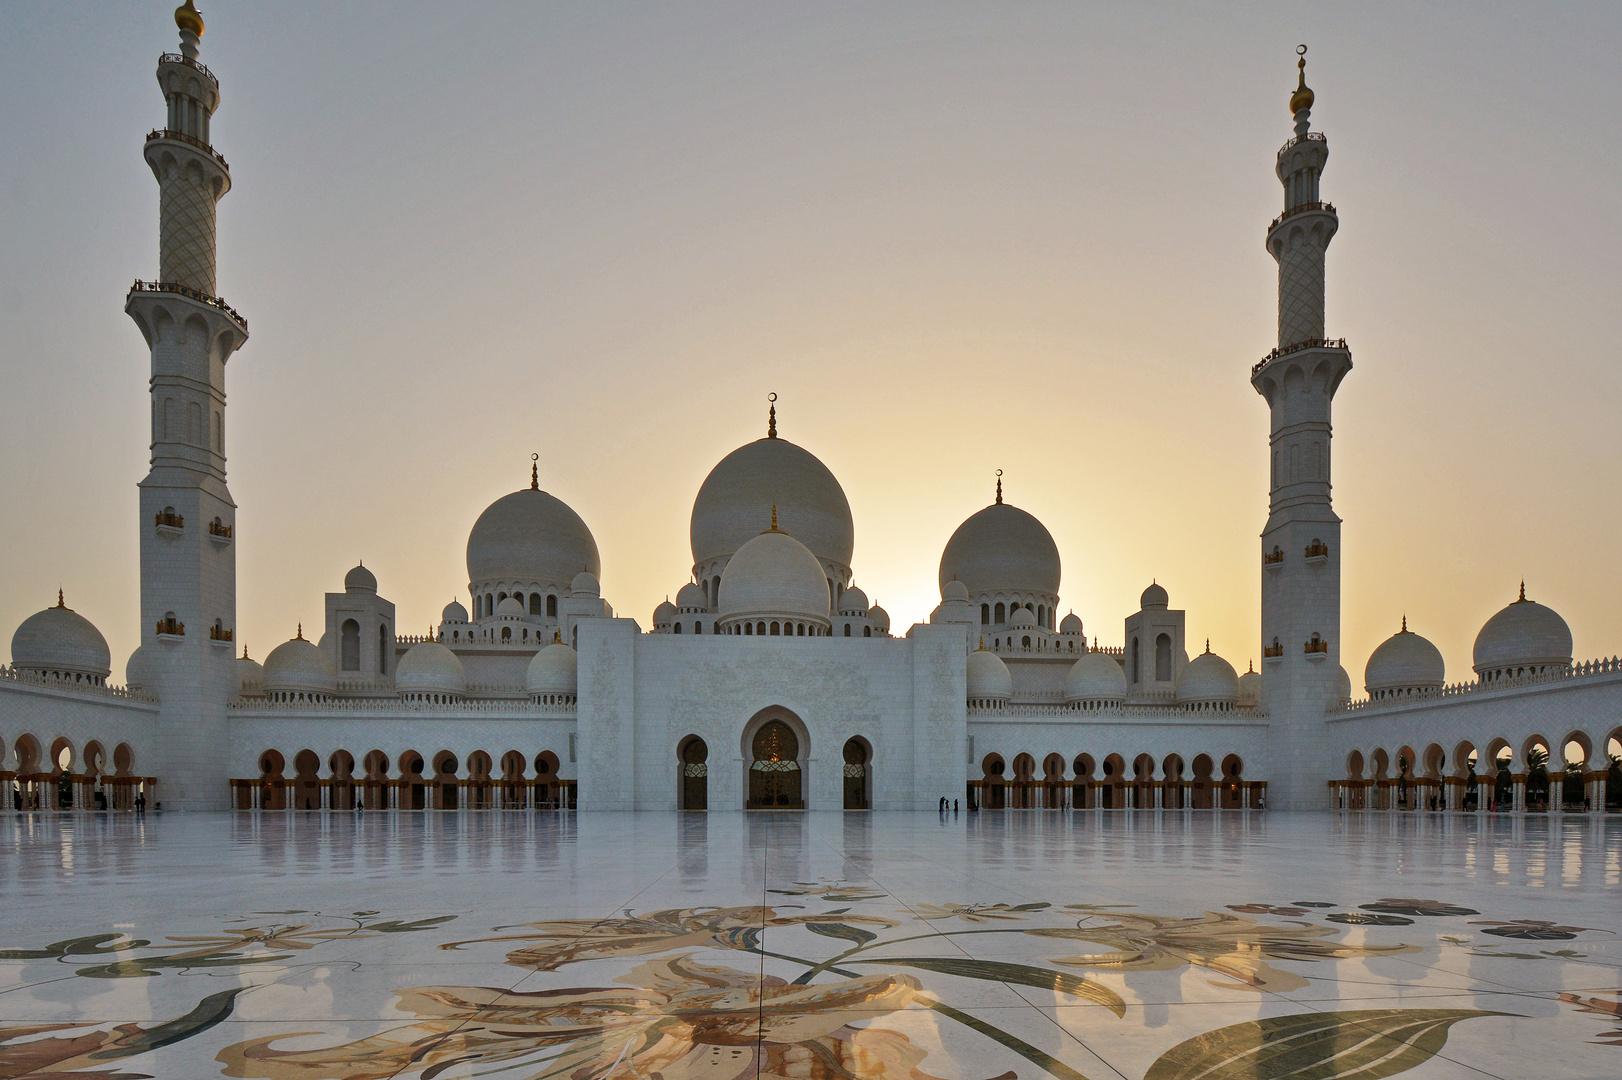 Abu Dhabi / Emirates